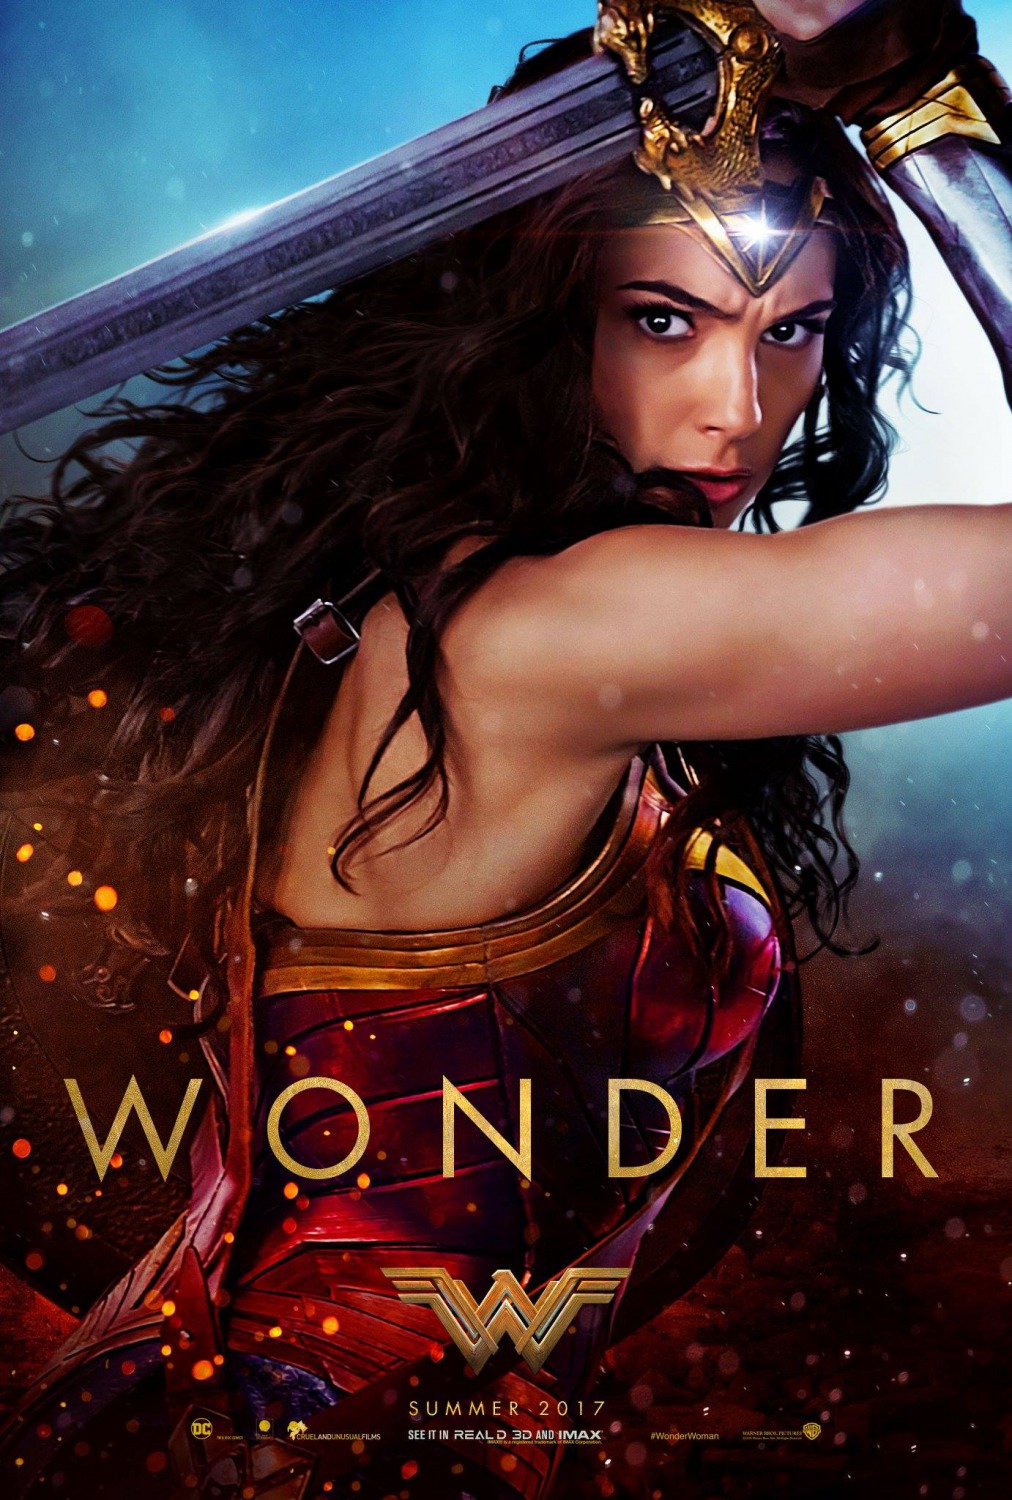 Wonder Woman (English) 2 Free Download 720p Movies